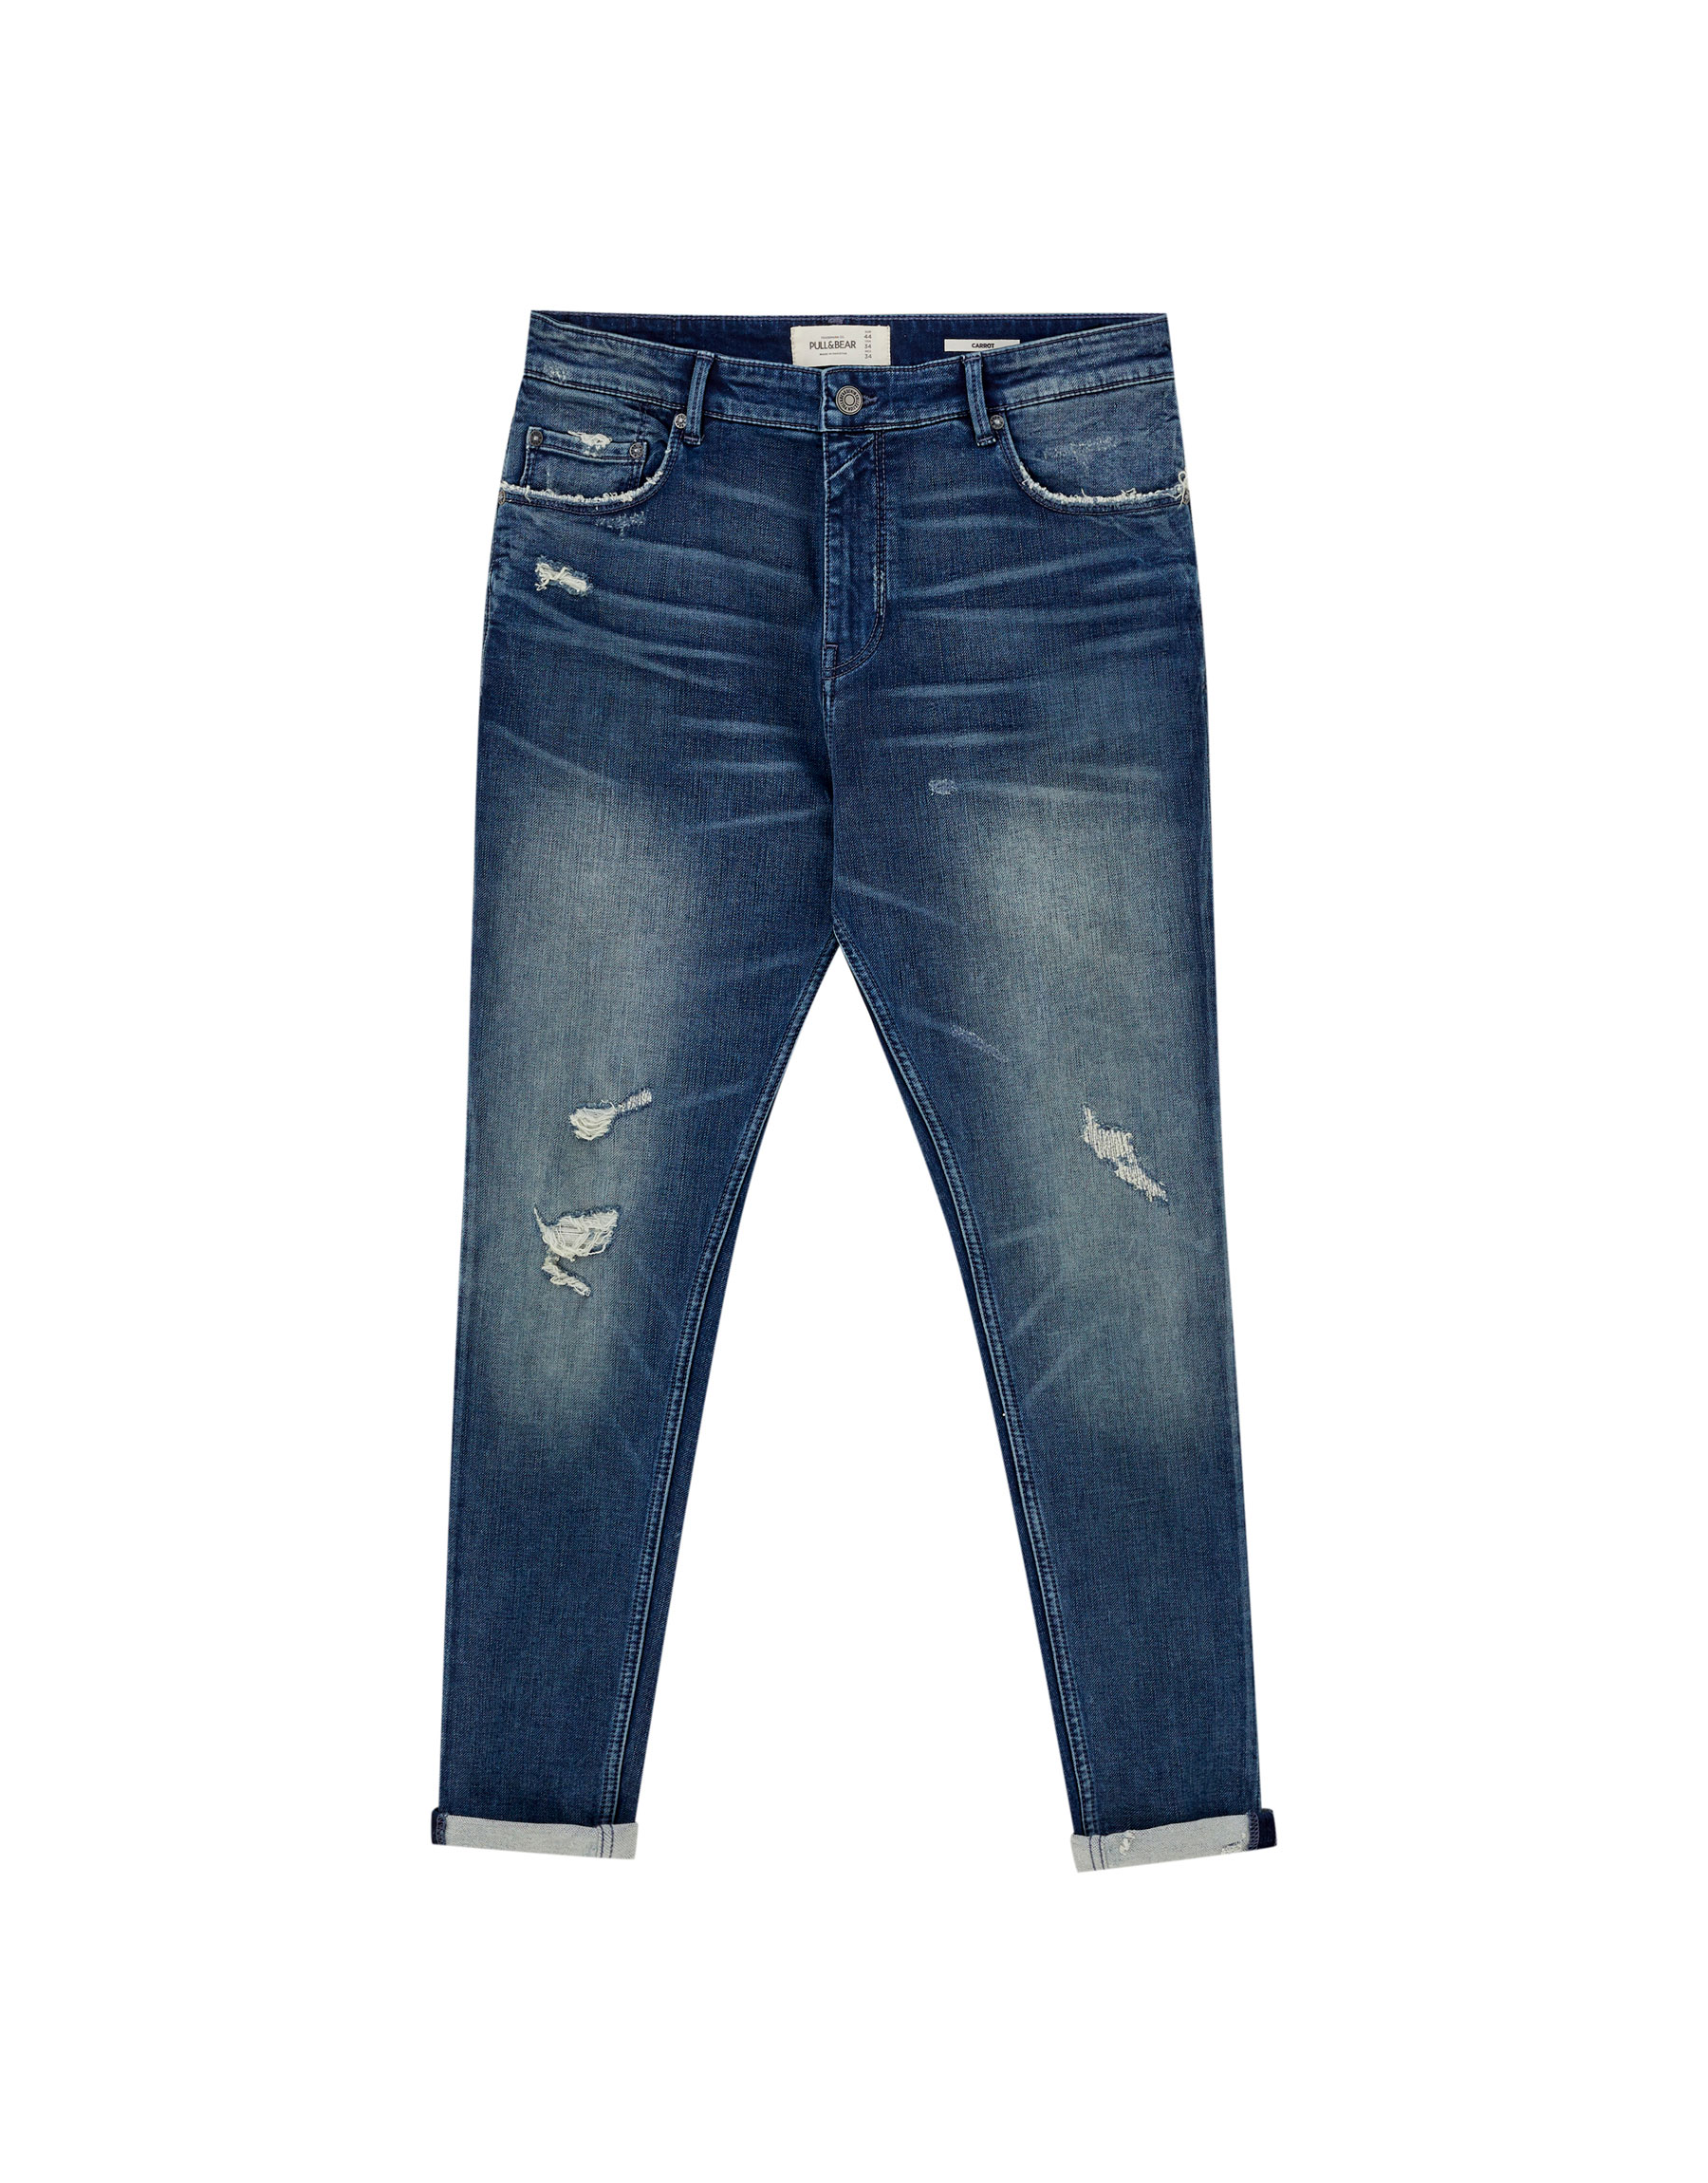 ТЕМНО-СИНИЙ Темные джинсы зауженного кроя, с эффектом потертости Pull & Bear